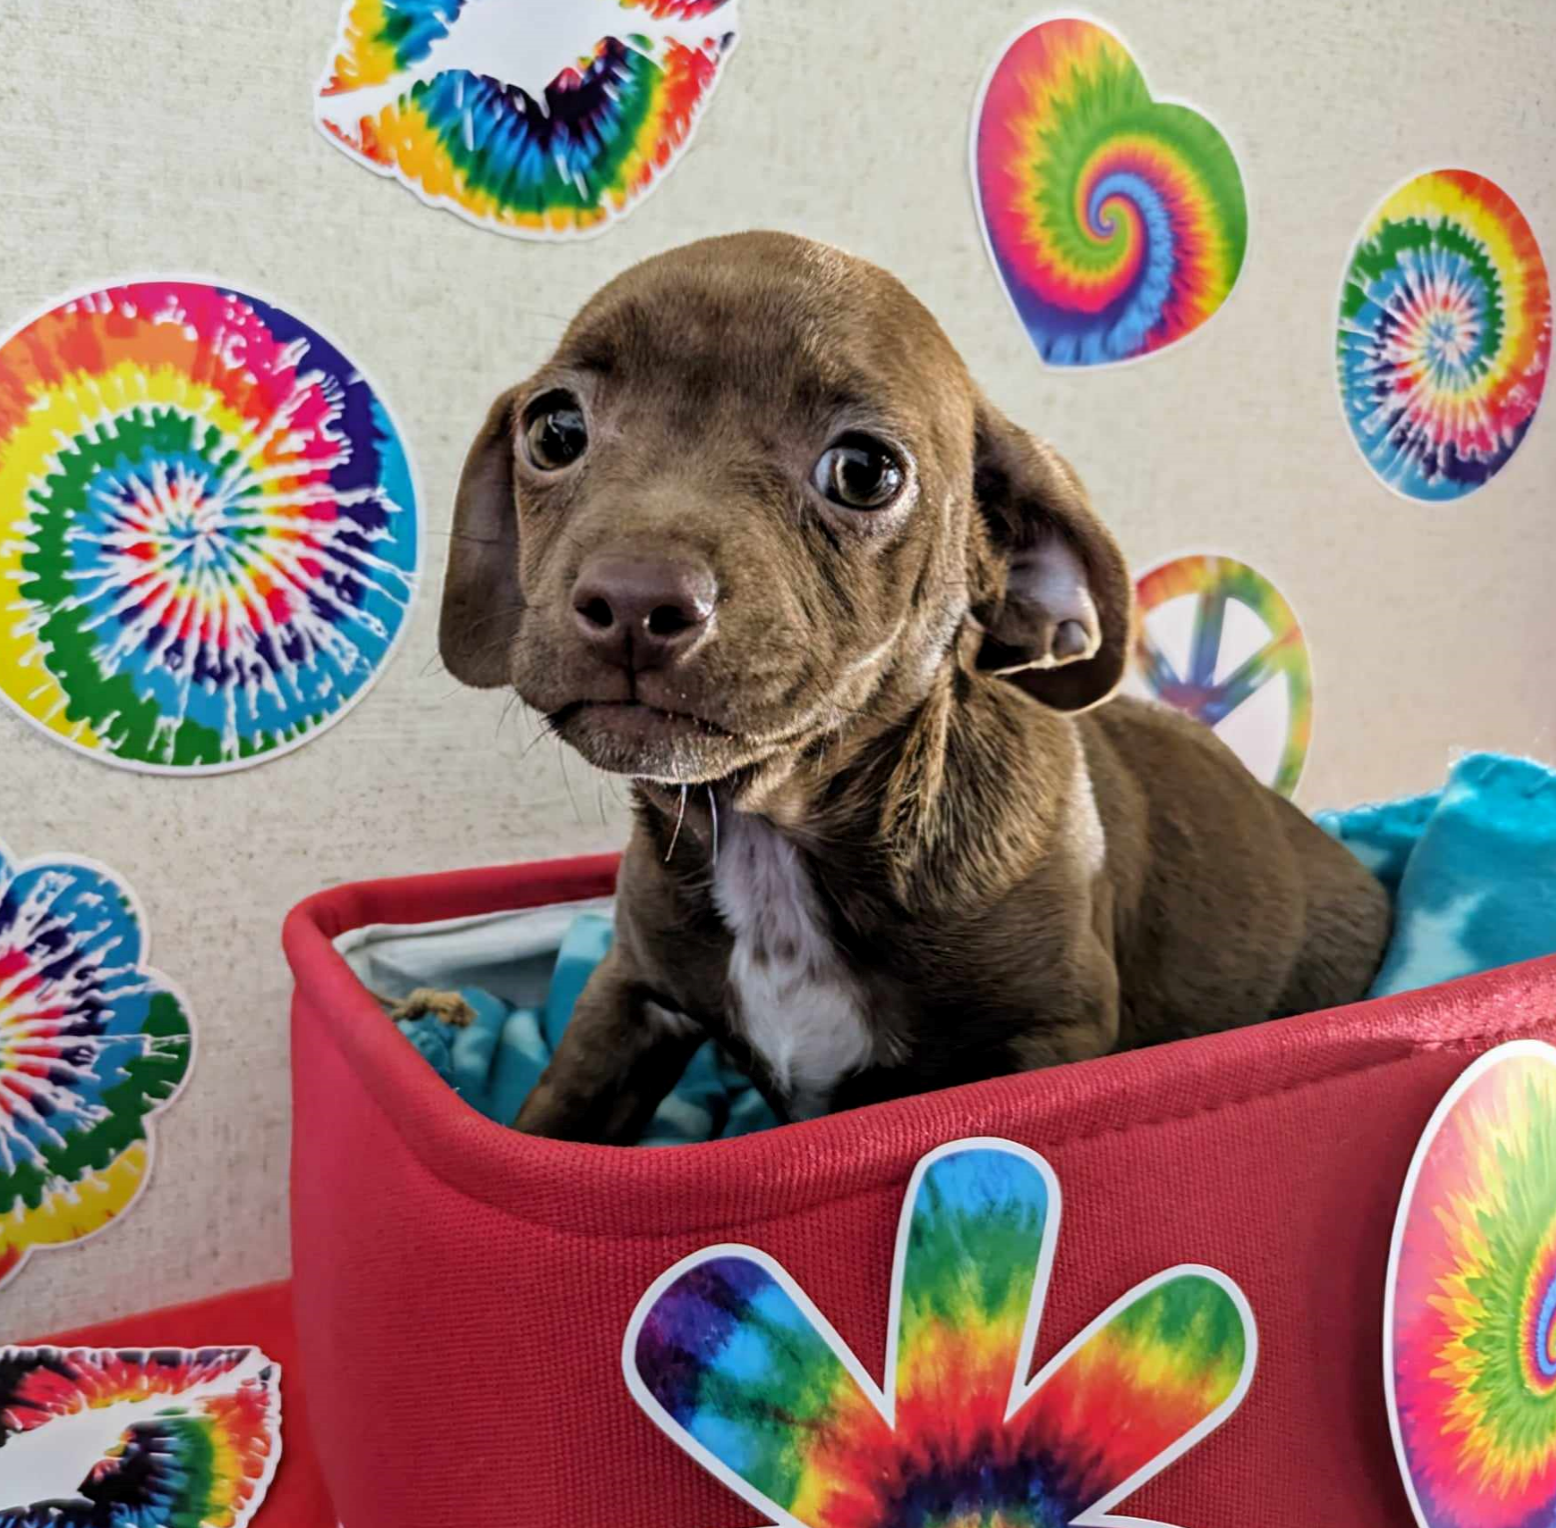 adoptable Dog in Fresno, CA named Flower Child